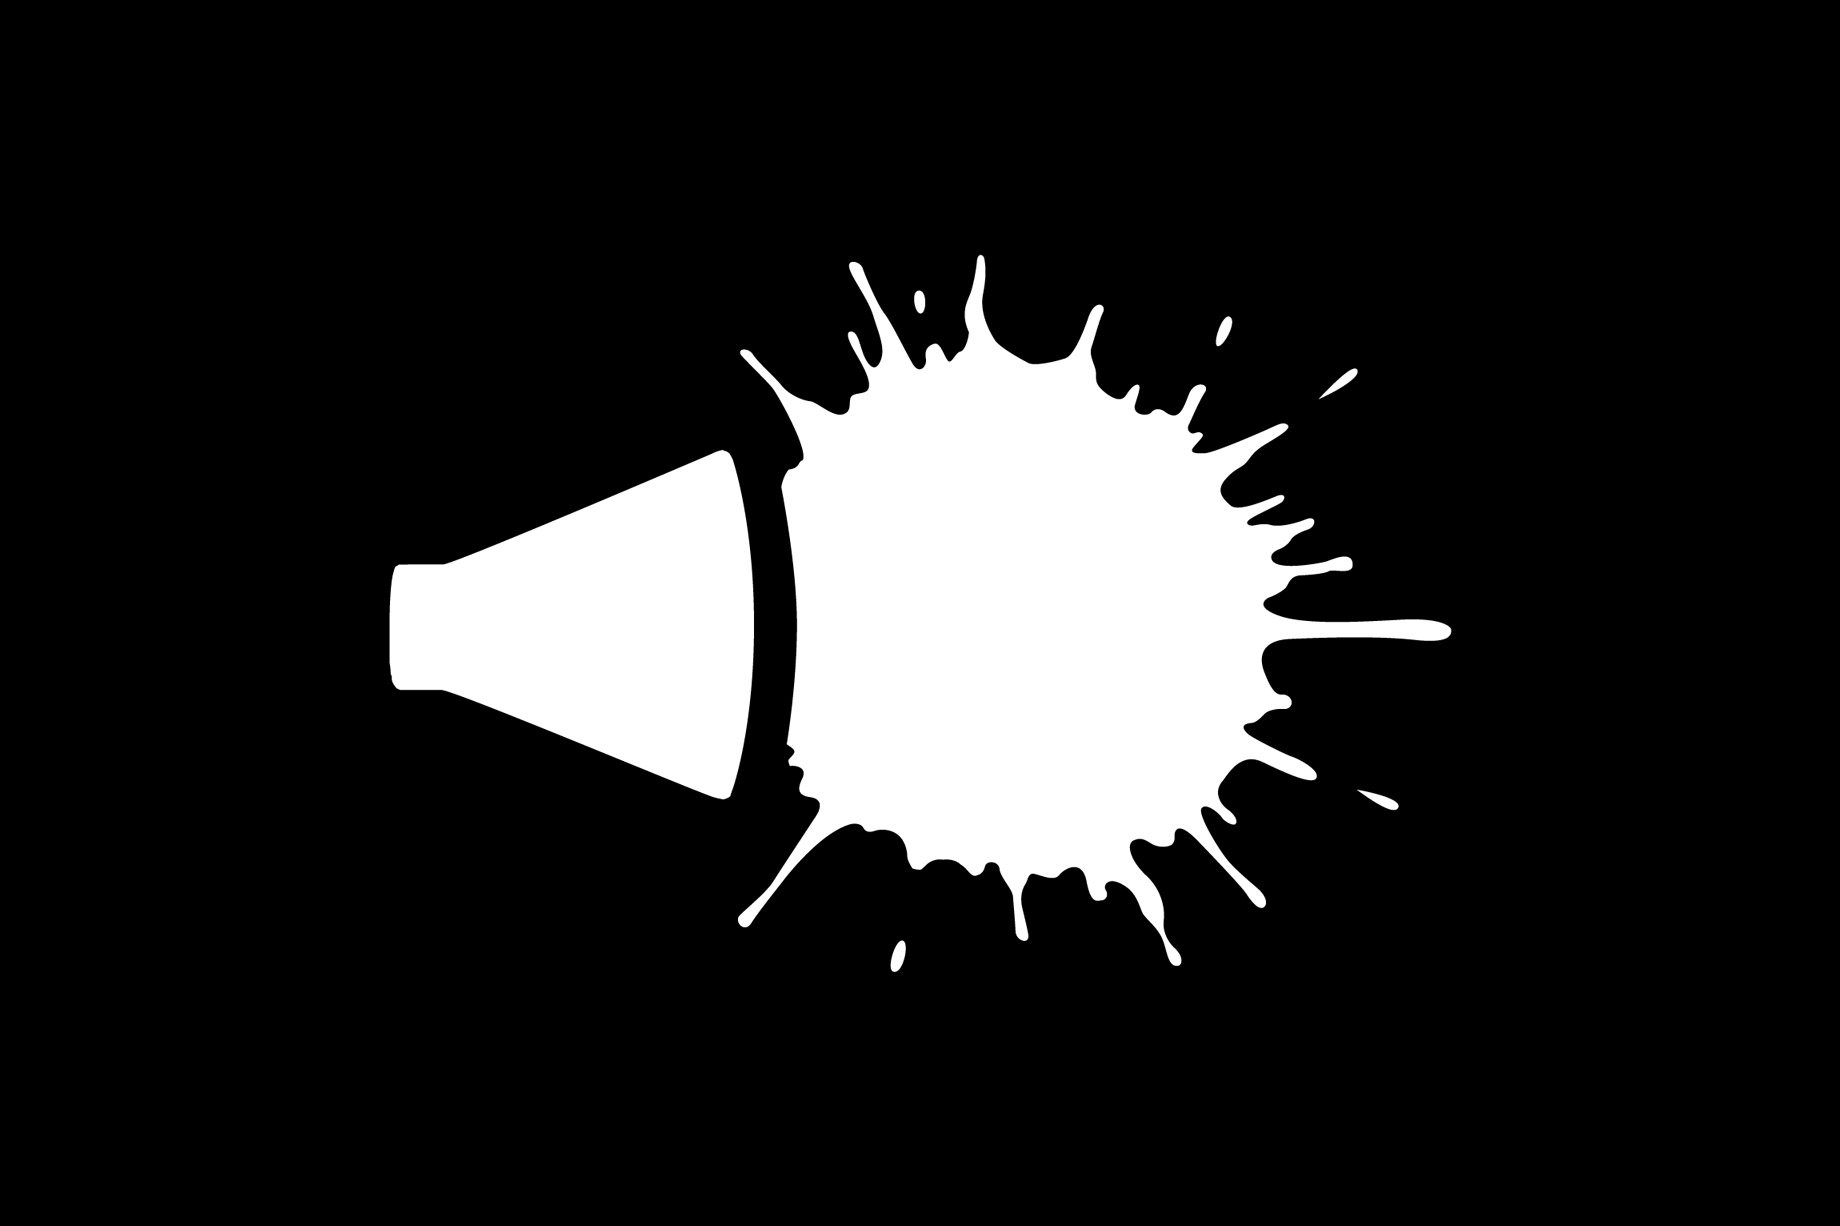 Lautschrift logo, white on black design